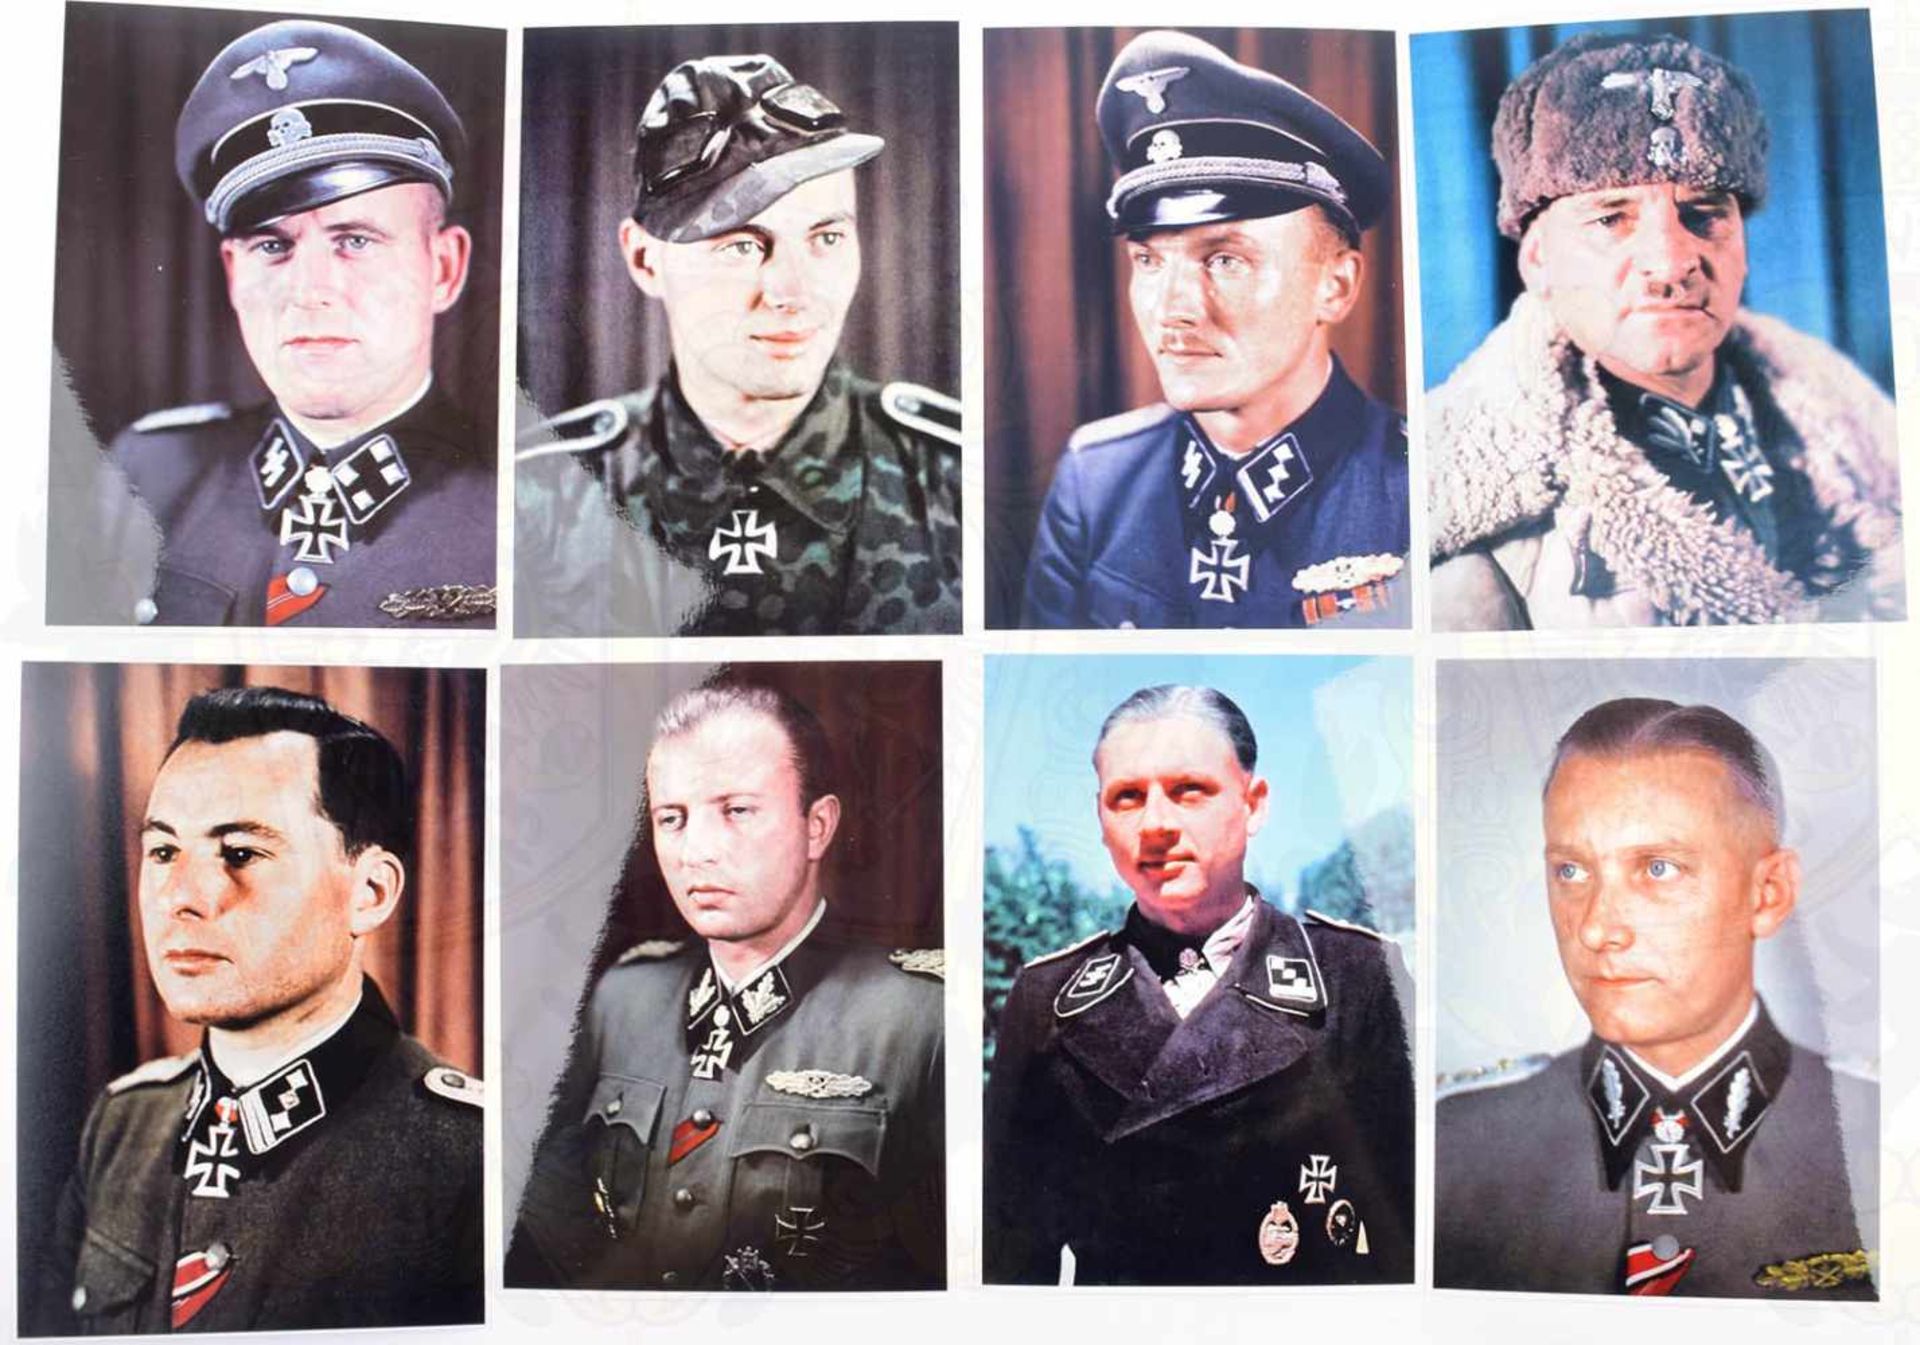 17 REPRO-FARBFOTOS RK-TRÄGER DER WAFFEN-SS, dabei Sepp Dietrich, Felix Steiner, Theodor Eicke,